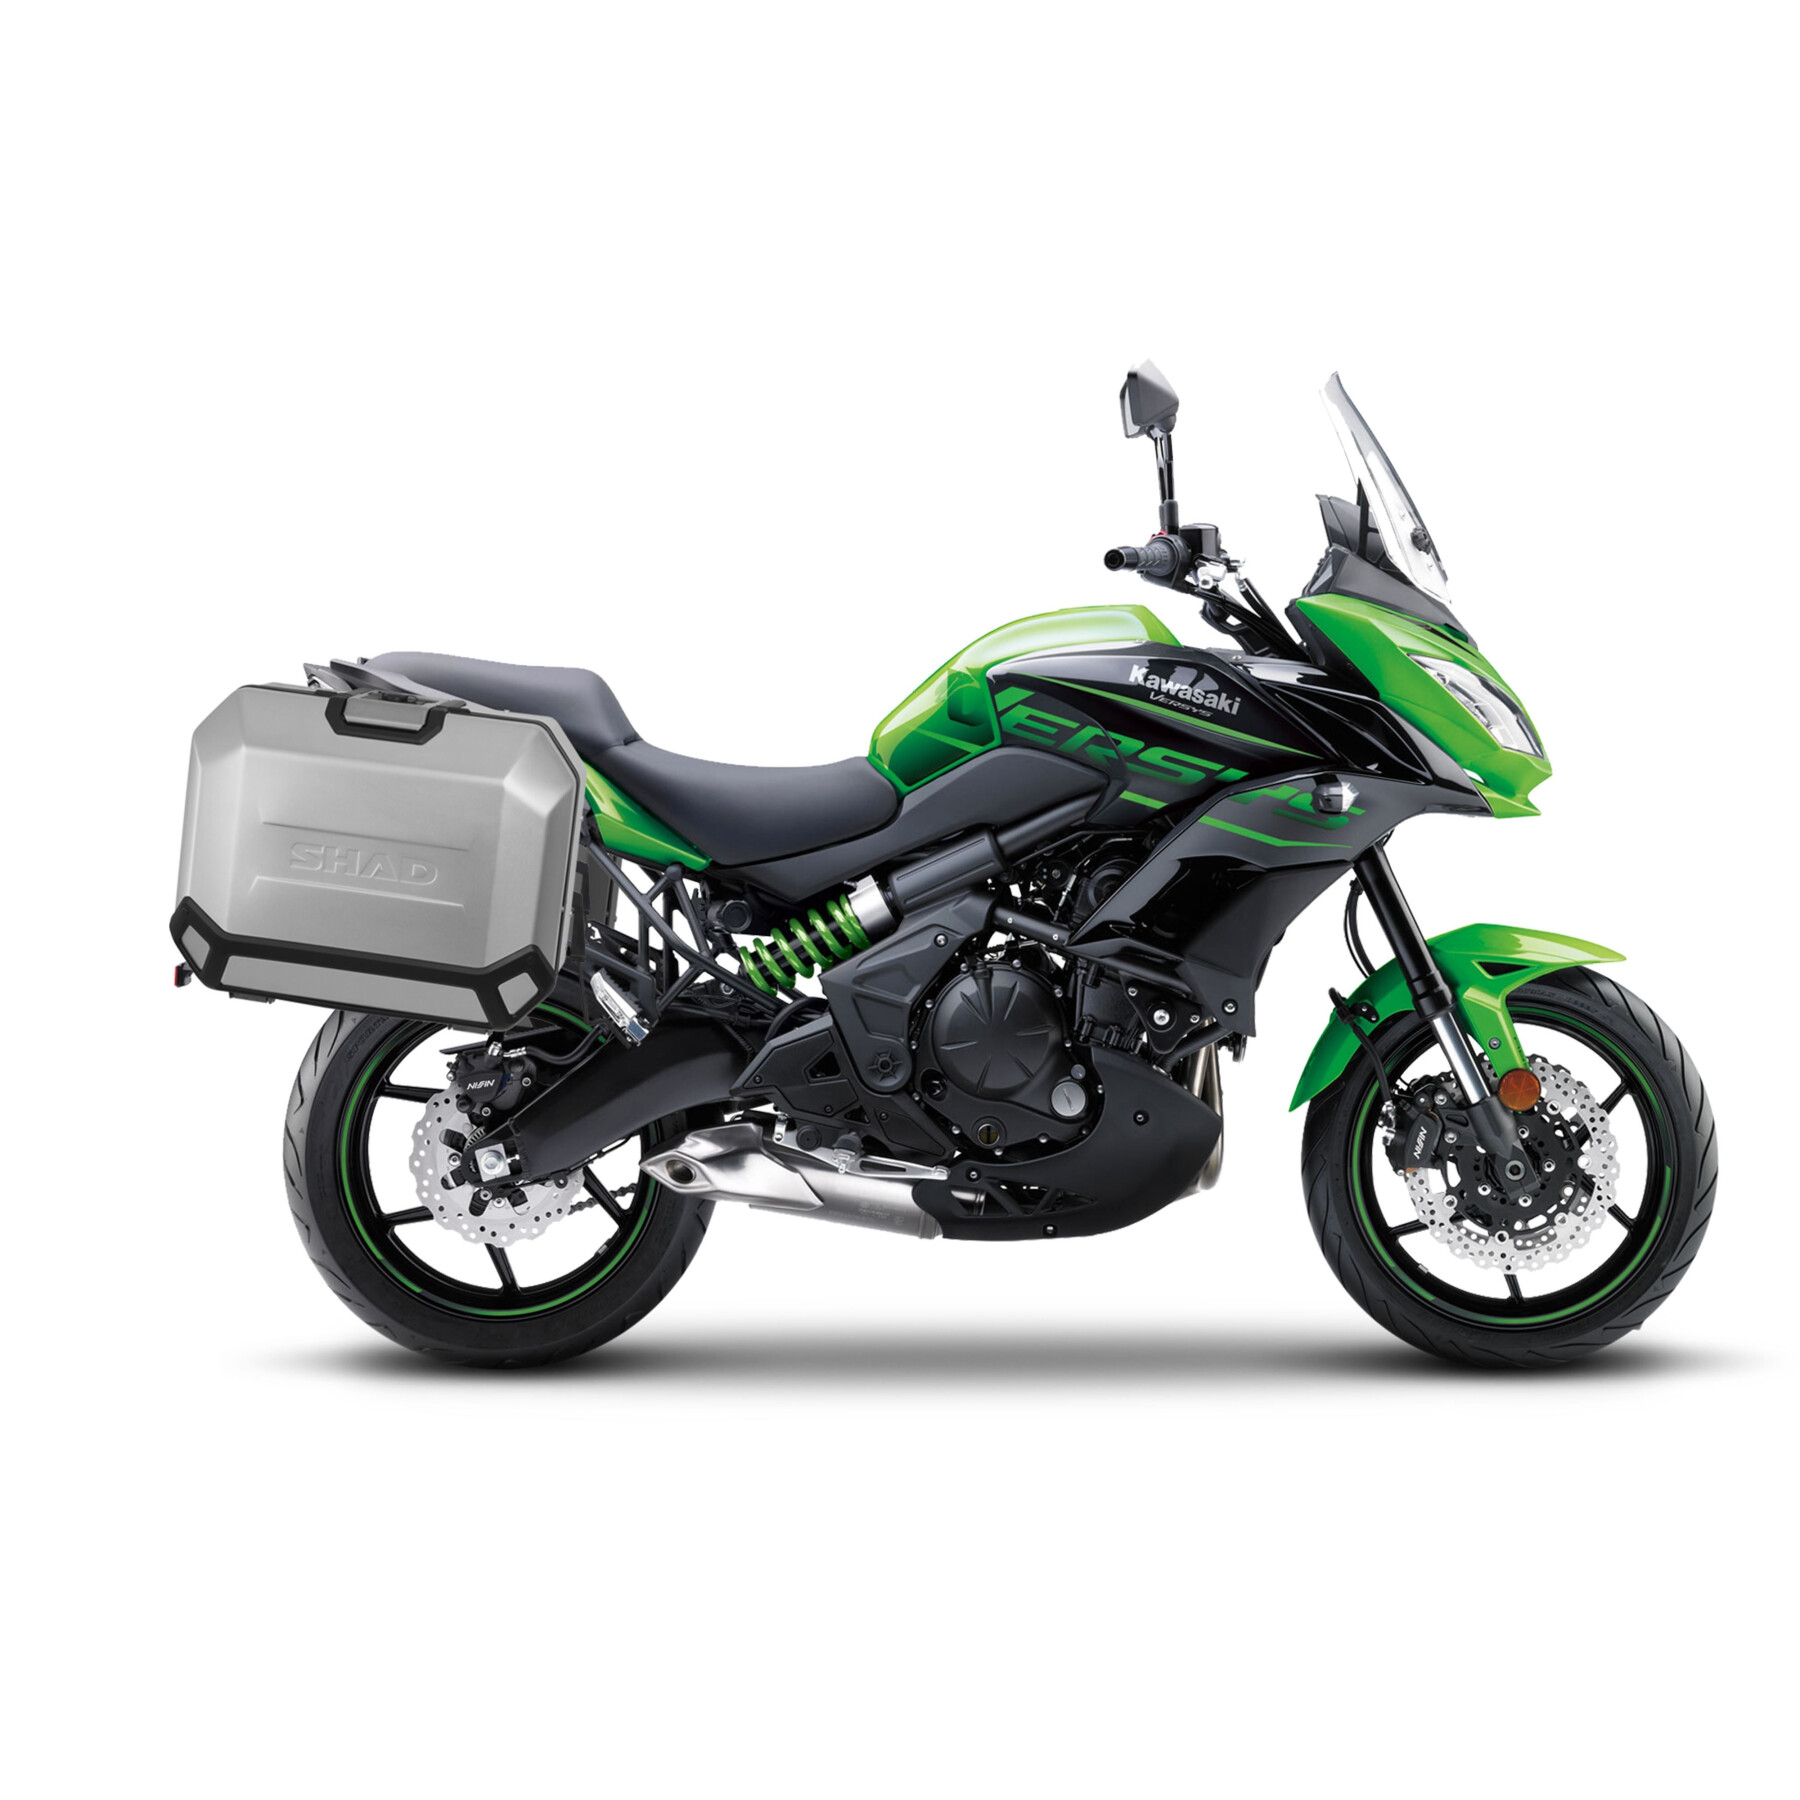 Bevestigingsset zijkoffers motorfiets Shad 4P Kawasaki Versys 650 '15-22